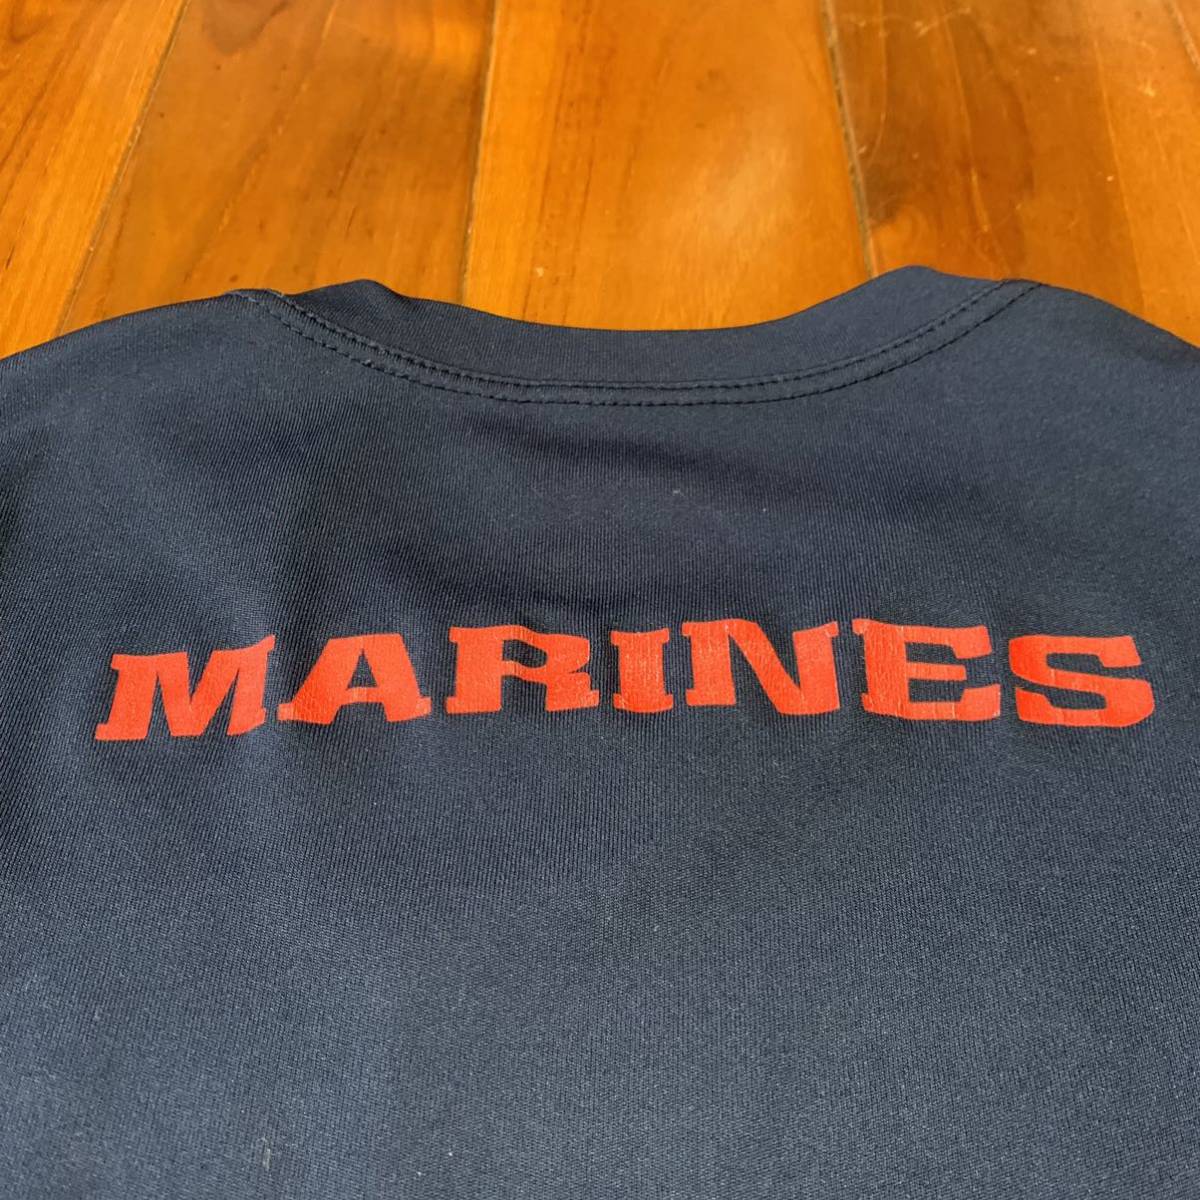  Okinawa вооруженные силы США сброшенный товар USMC MARINE короткий рукав футболка стиль мода б/у одежда Vintage MEDIUM темно-синий ( контрольный номер KL8)